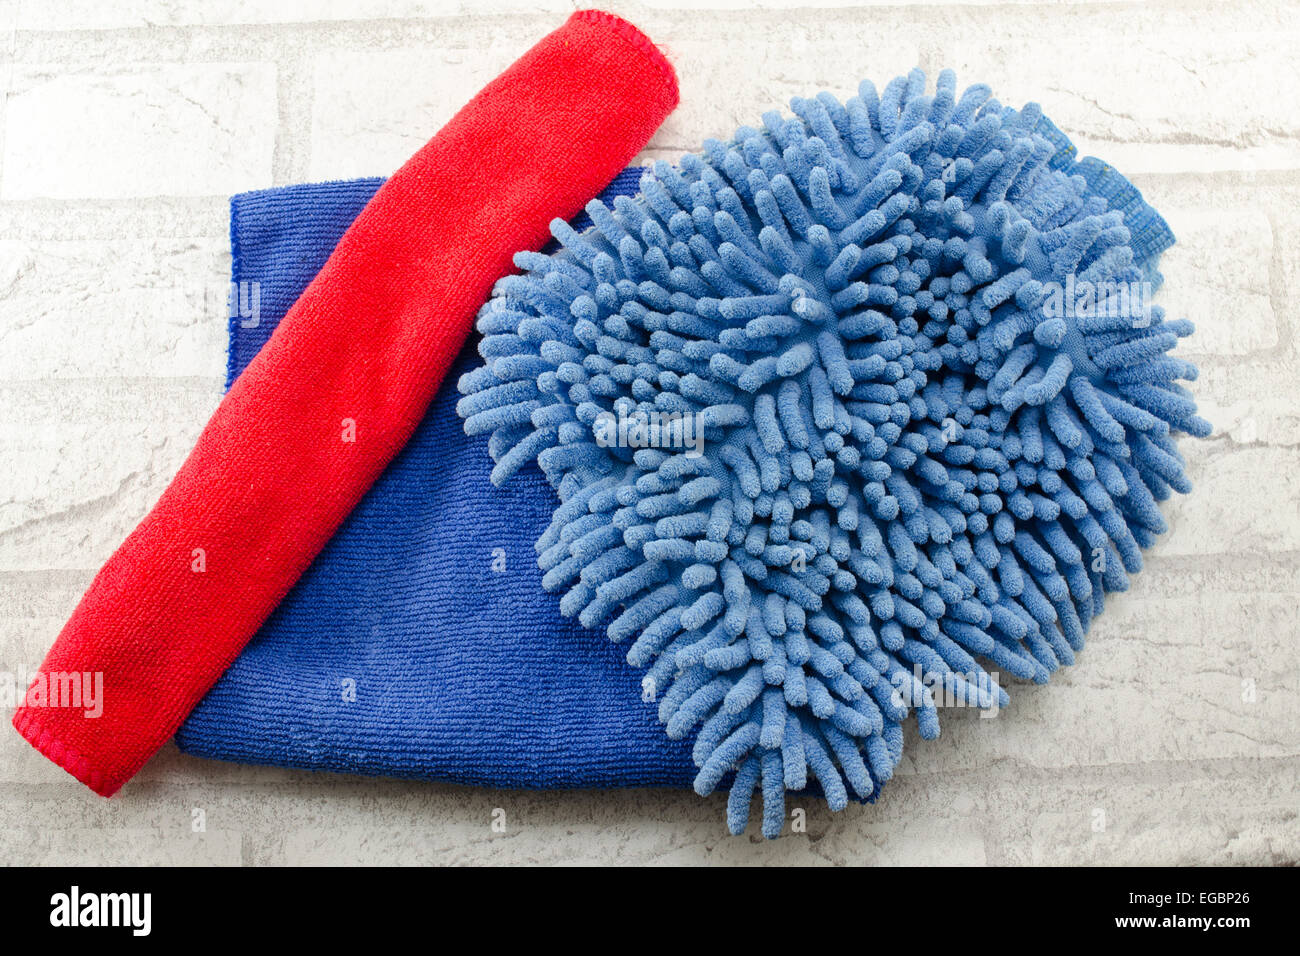 La poussière microfibre bleu et rouge des chiffons d'essuyage Banque D'Images